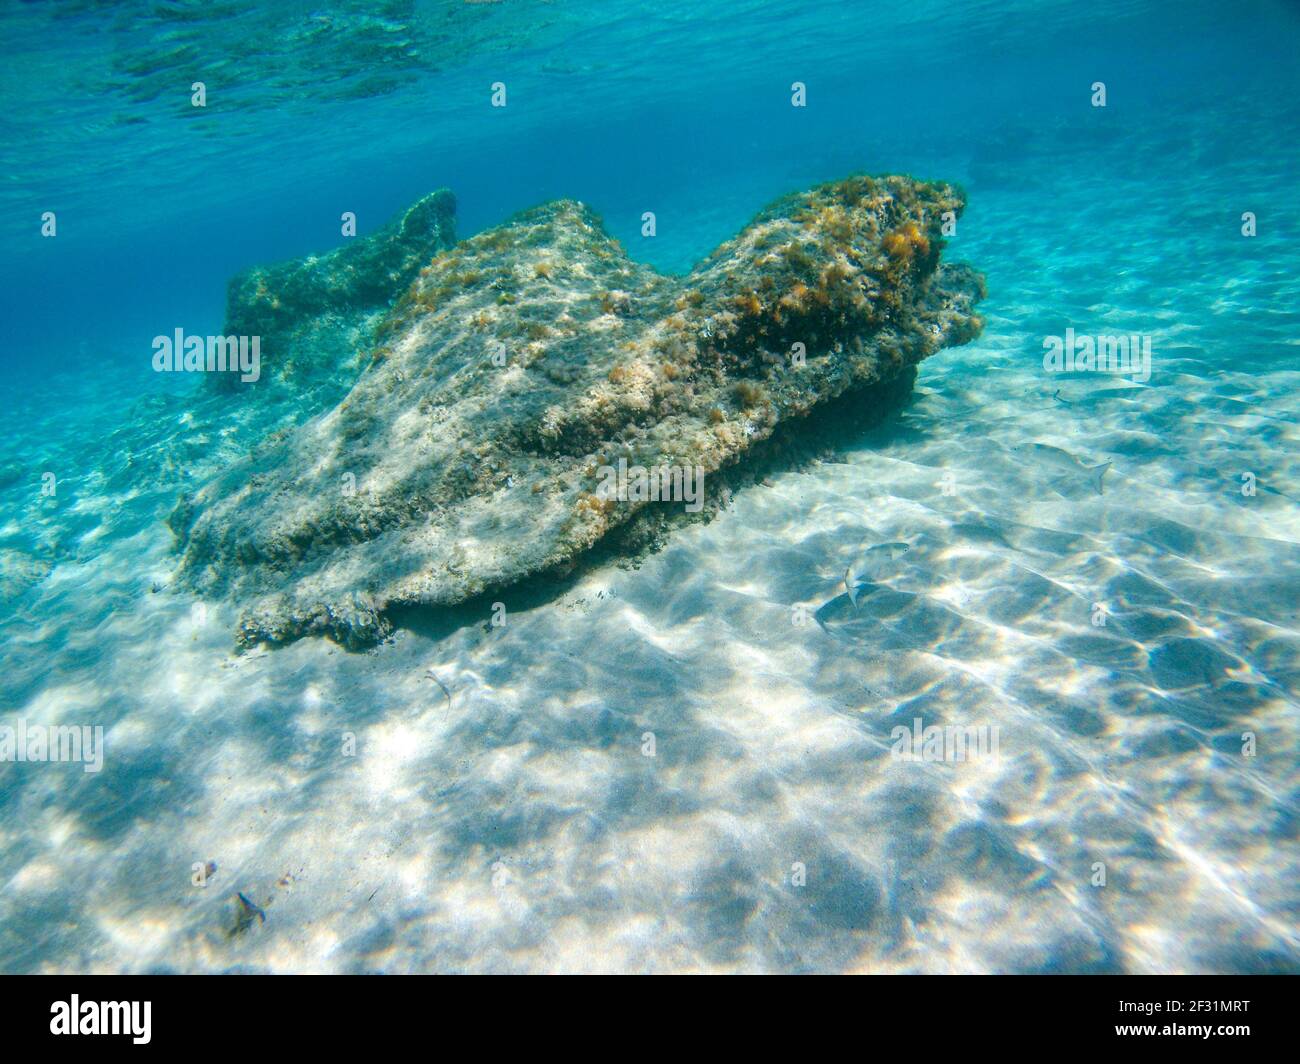 Fauna sottomarina, pesci d'argento sulla sabbia fondo di mare in Sunbeam vicino grande roccia nelle acque blu limpide del Mar Ionio in Grecia. Immersioni, osservare i pesci in profondità Foto Stock